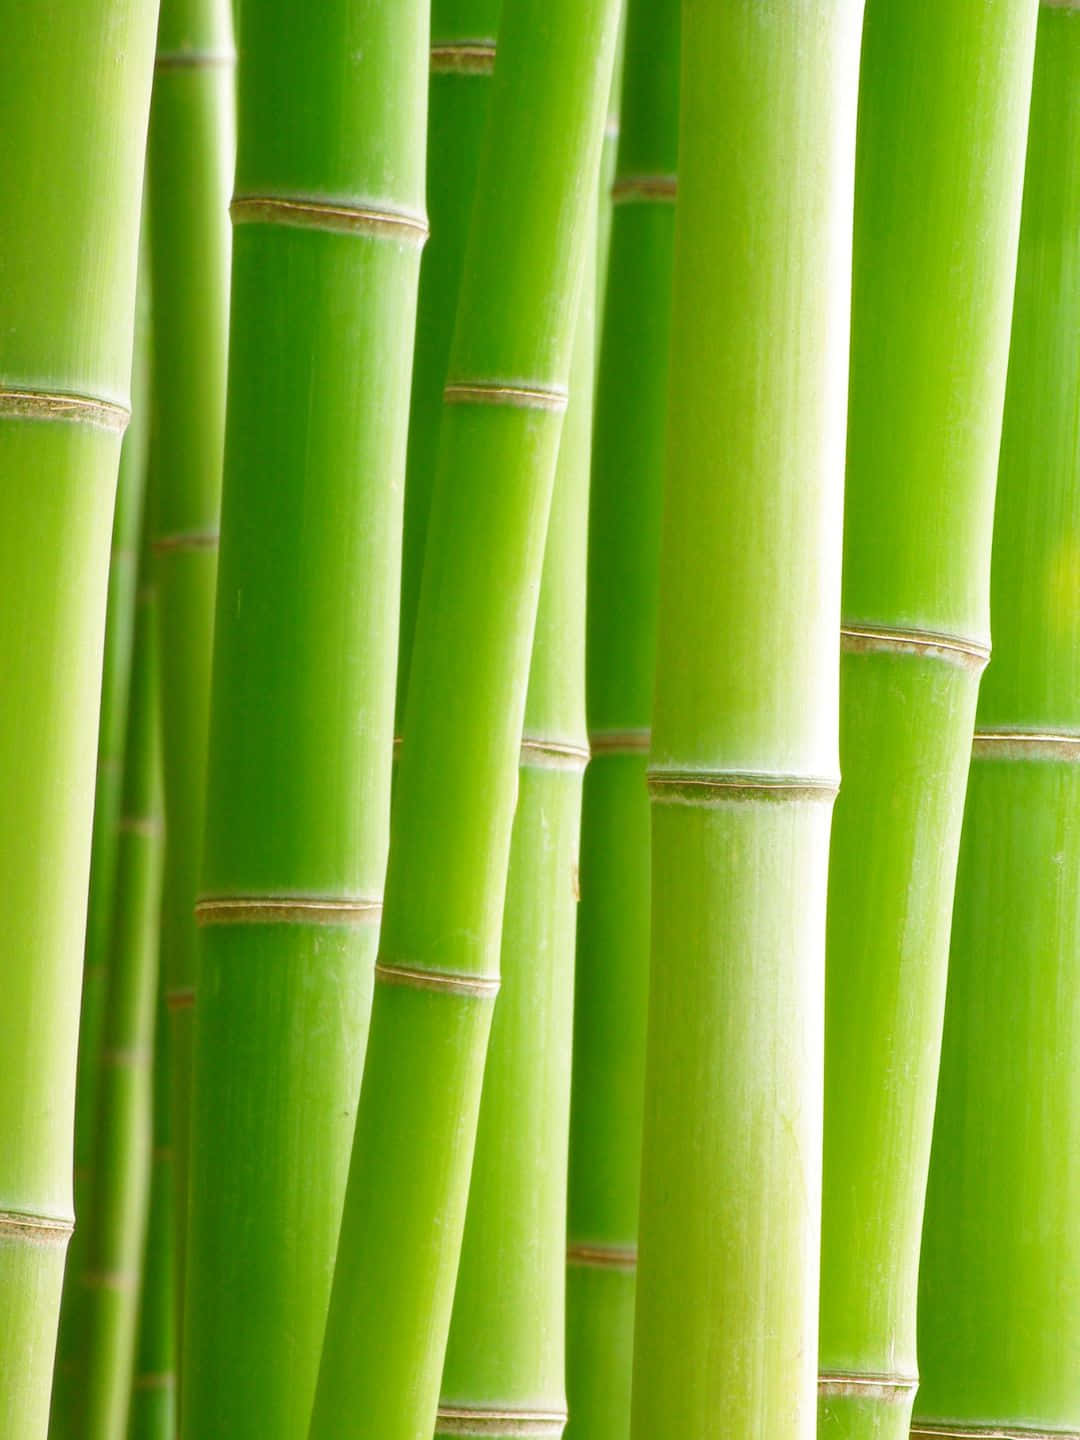 Papelde Parede De Bambu 1440p, Com Hastes Finas Em Tom Verde Claro Agrupadas.